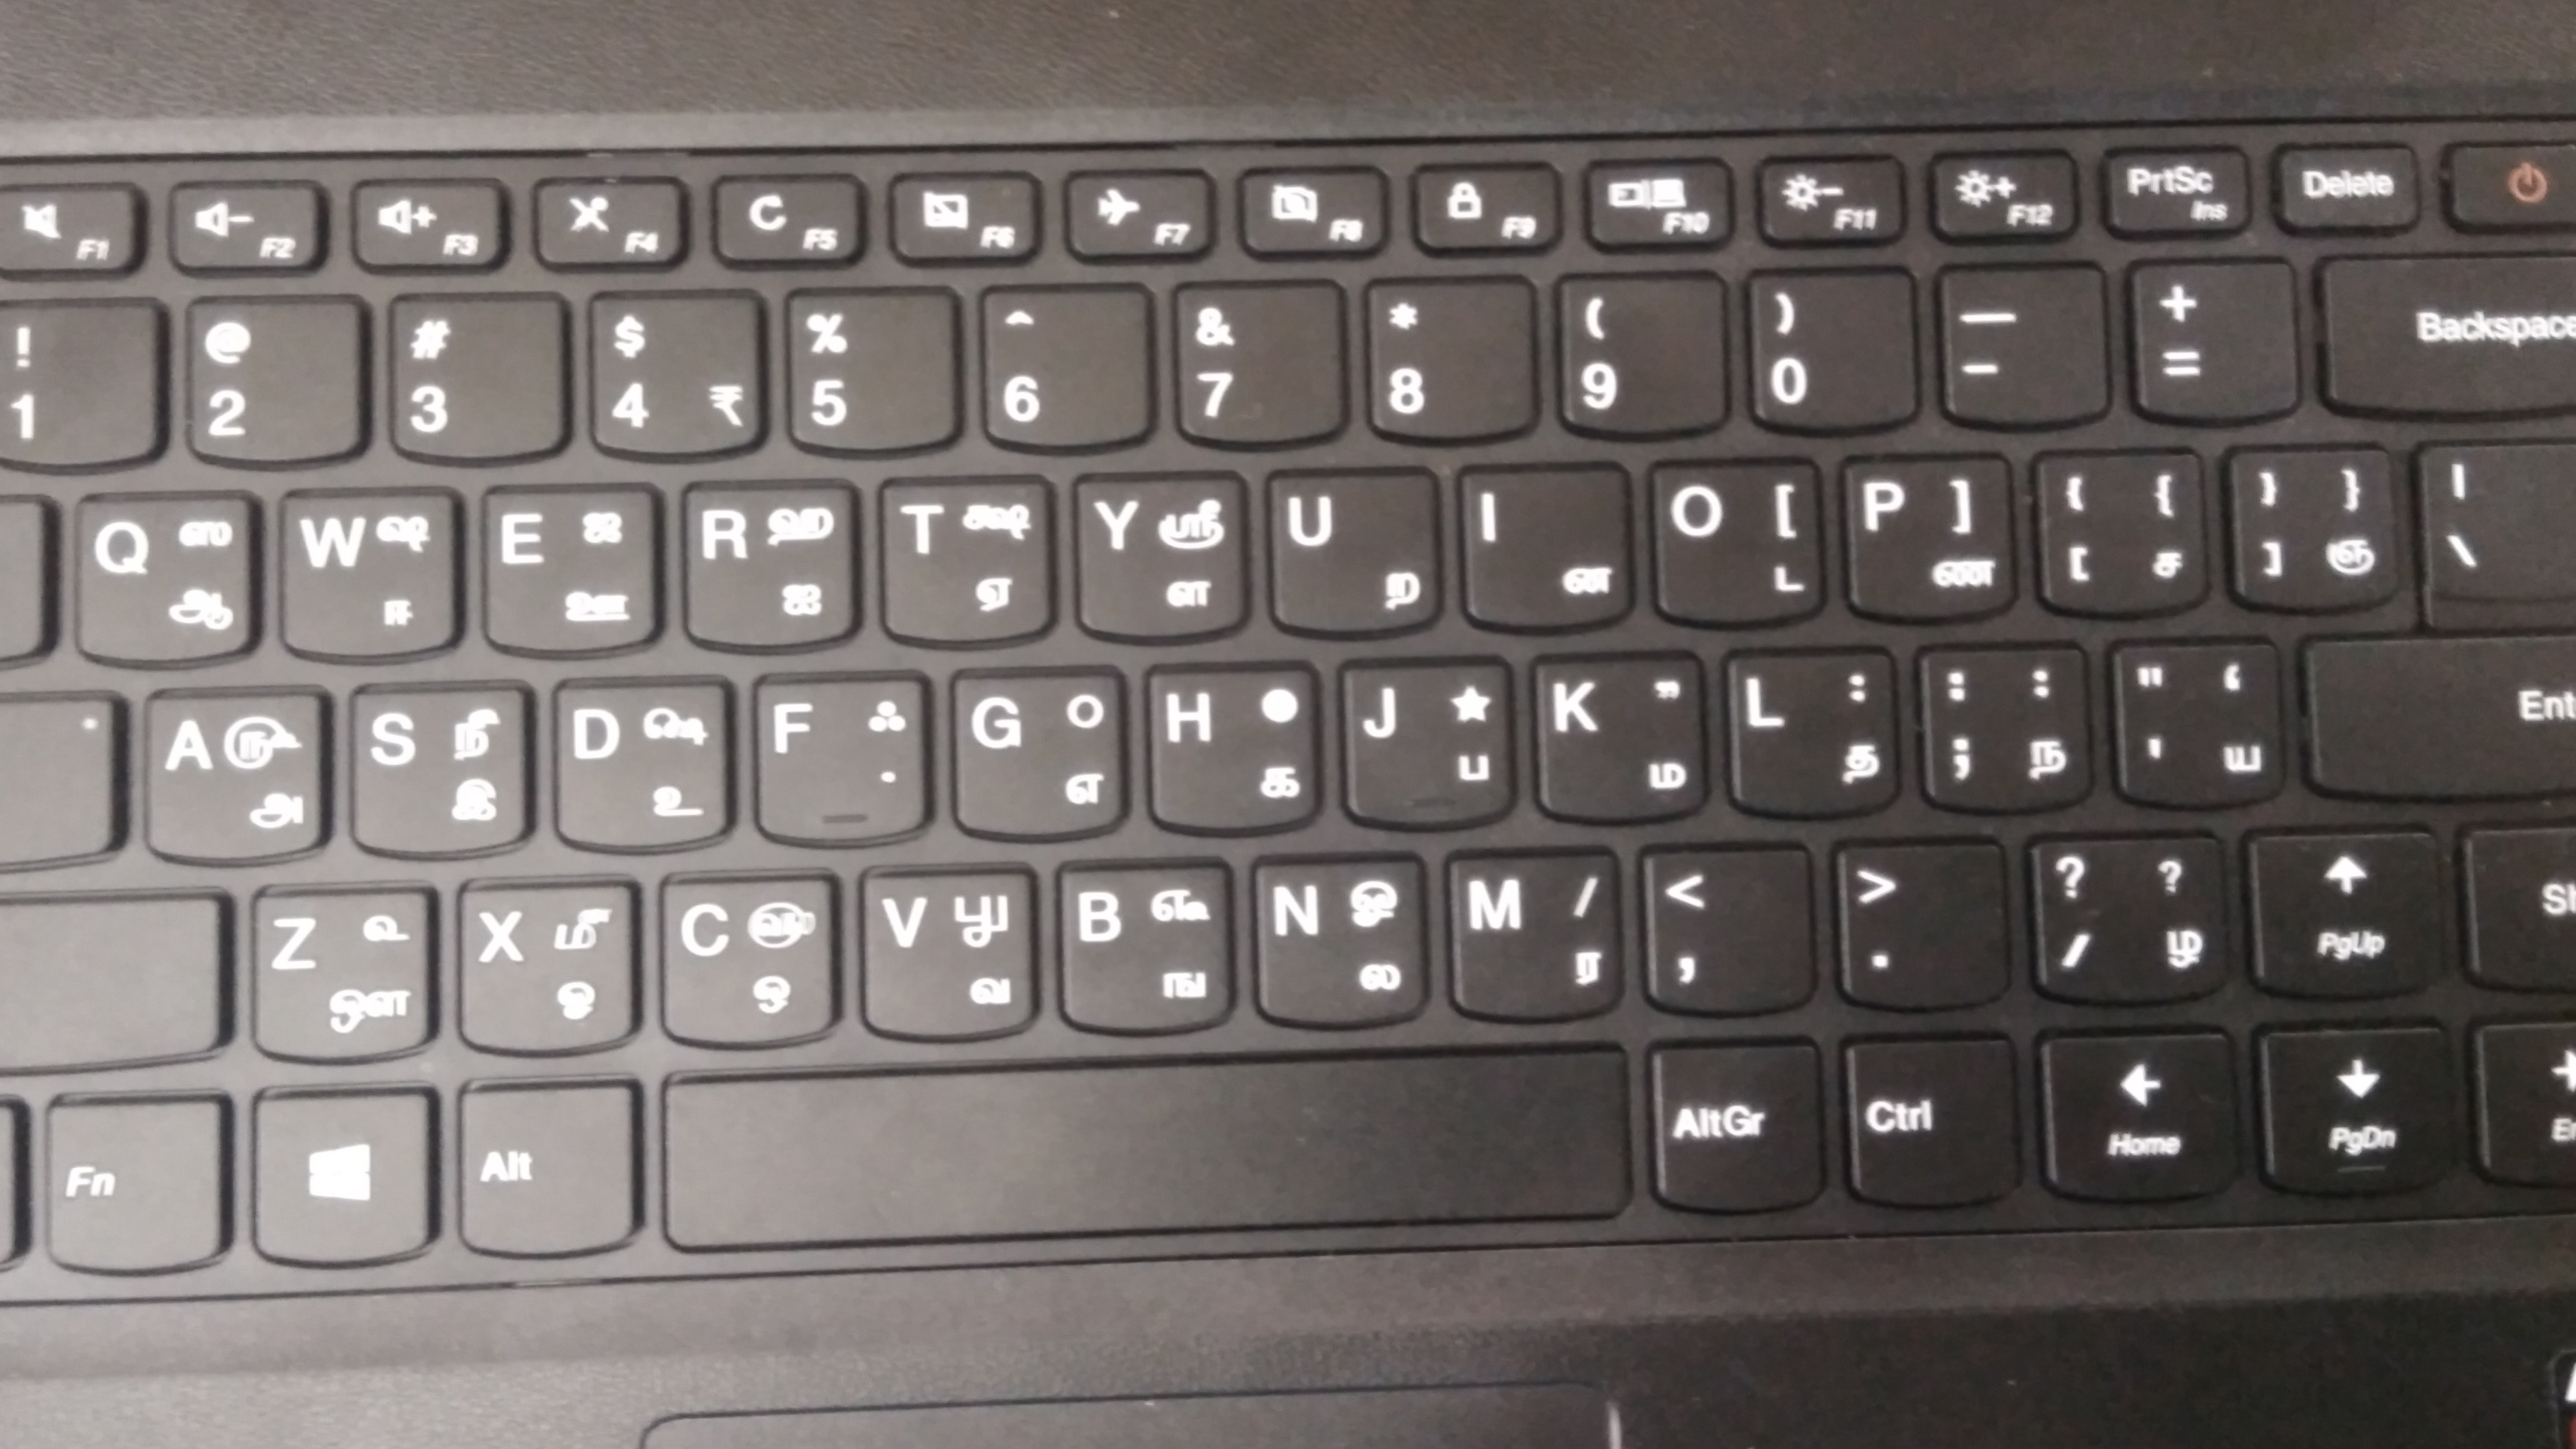 Tamil 99 laptop keyboard